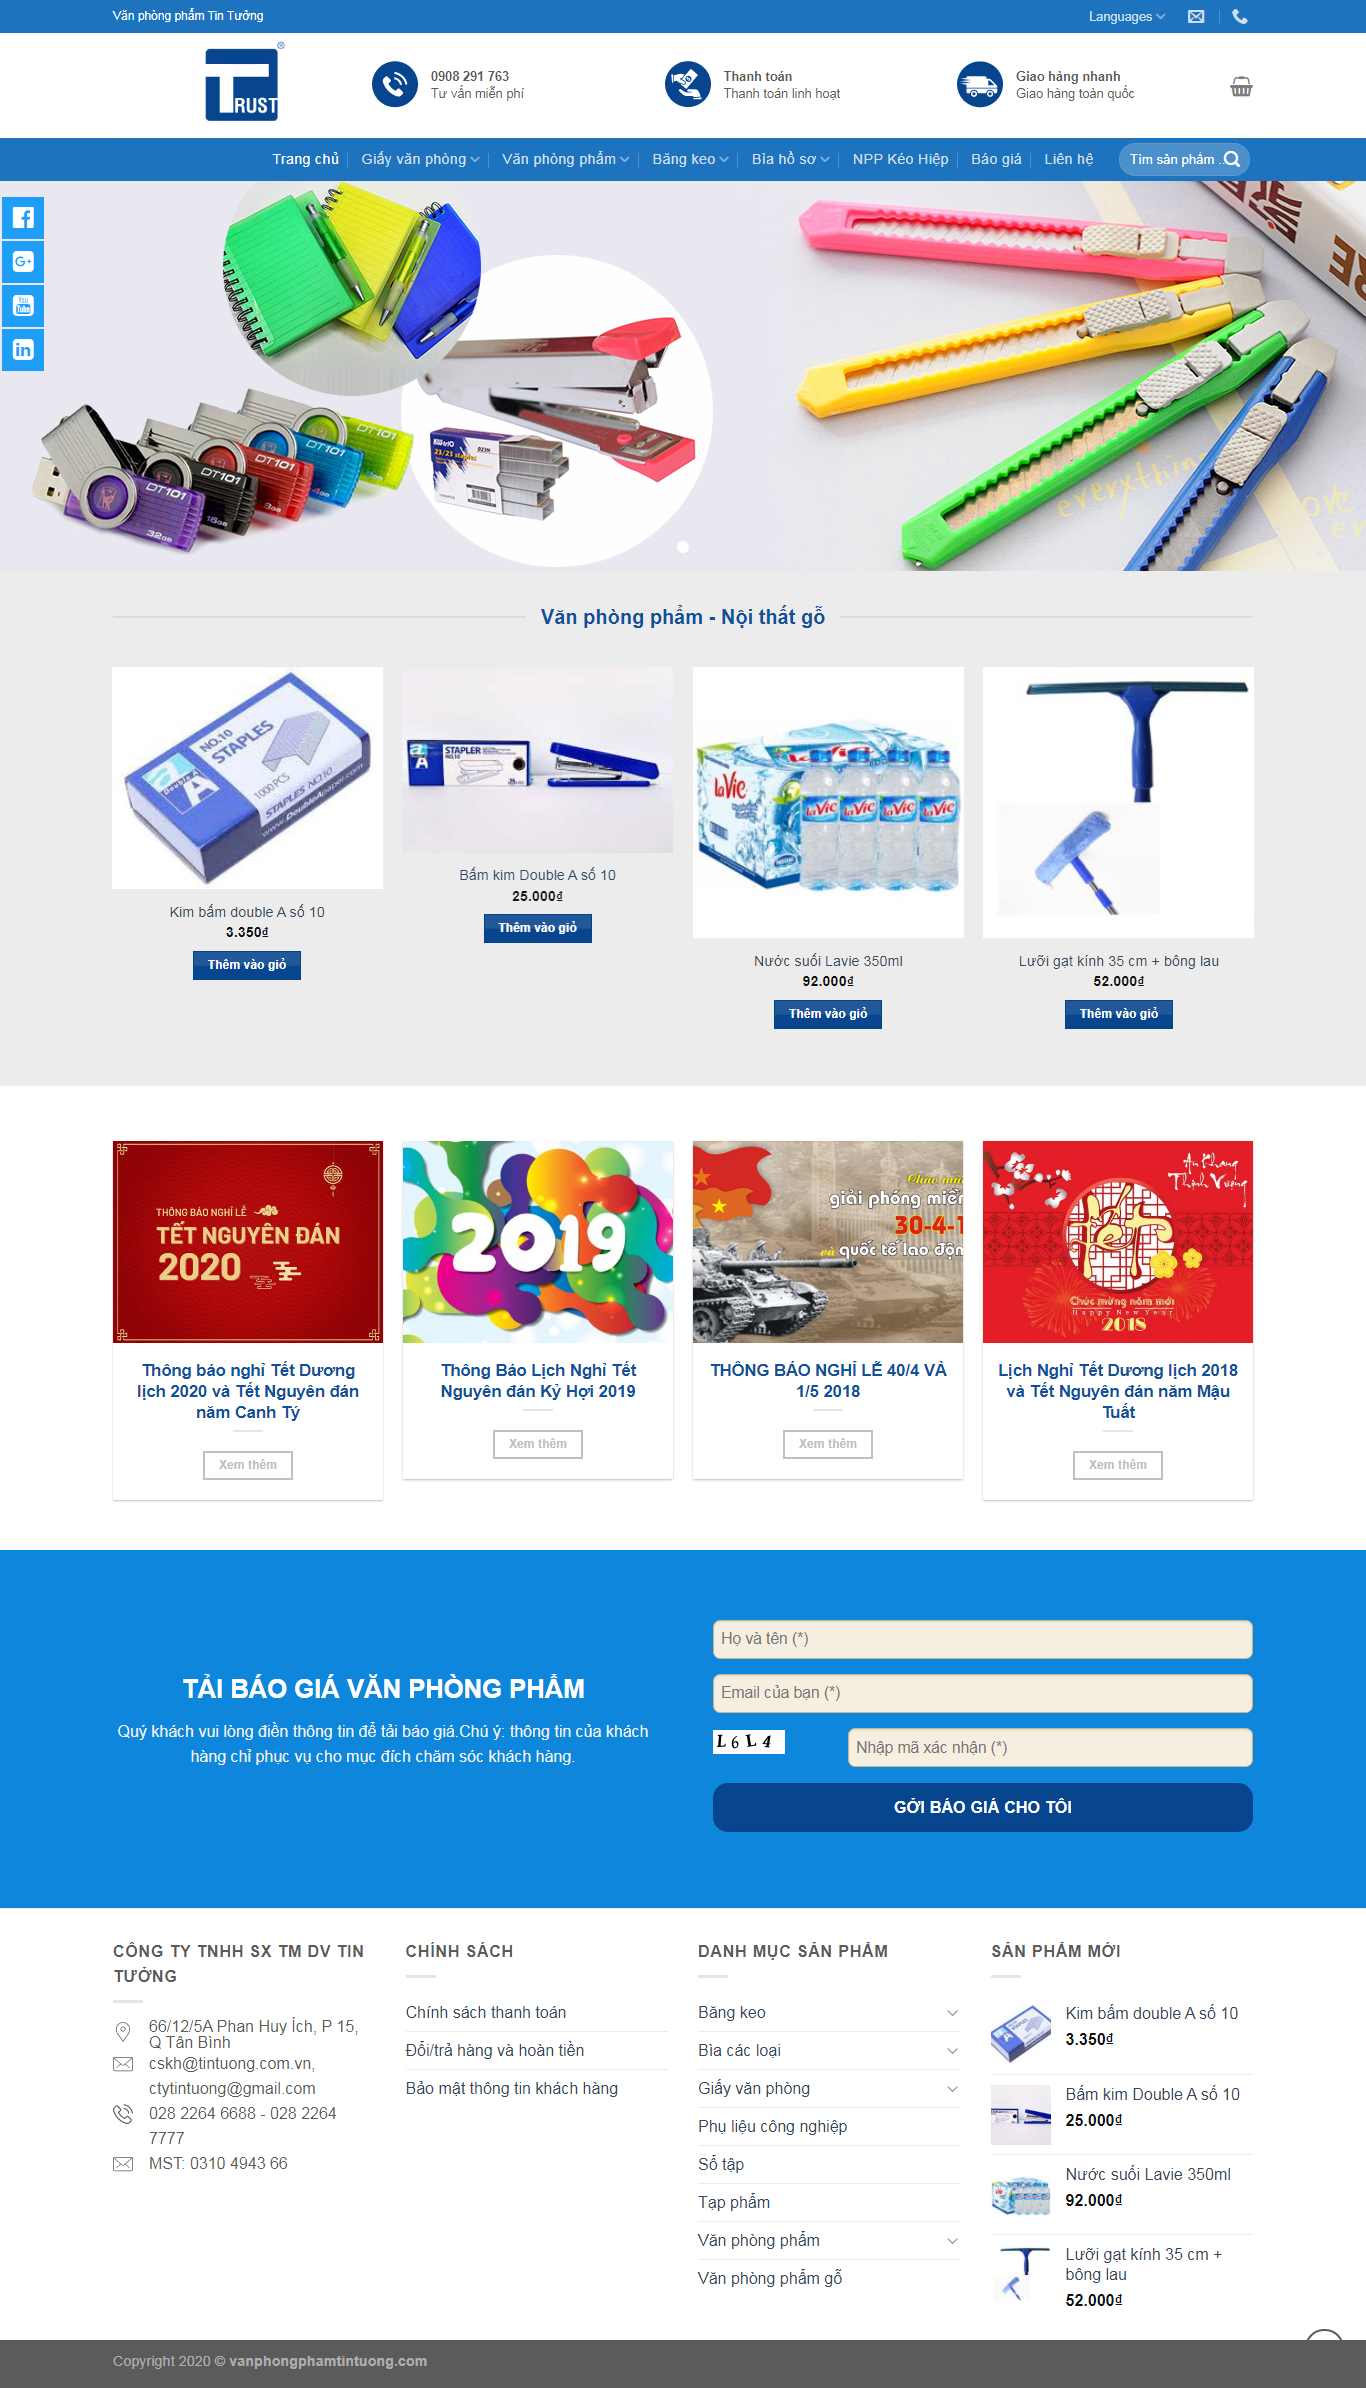 Thiết kế Website văn phòng phẩm - vanphongphamtintuong.com